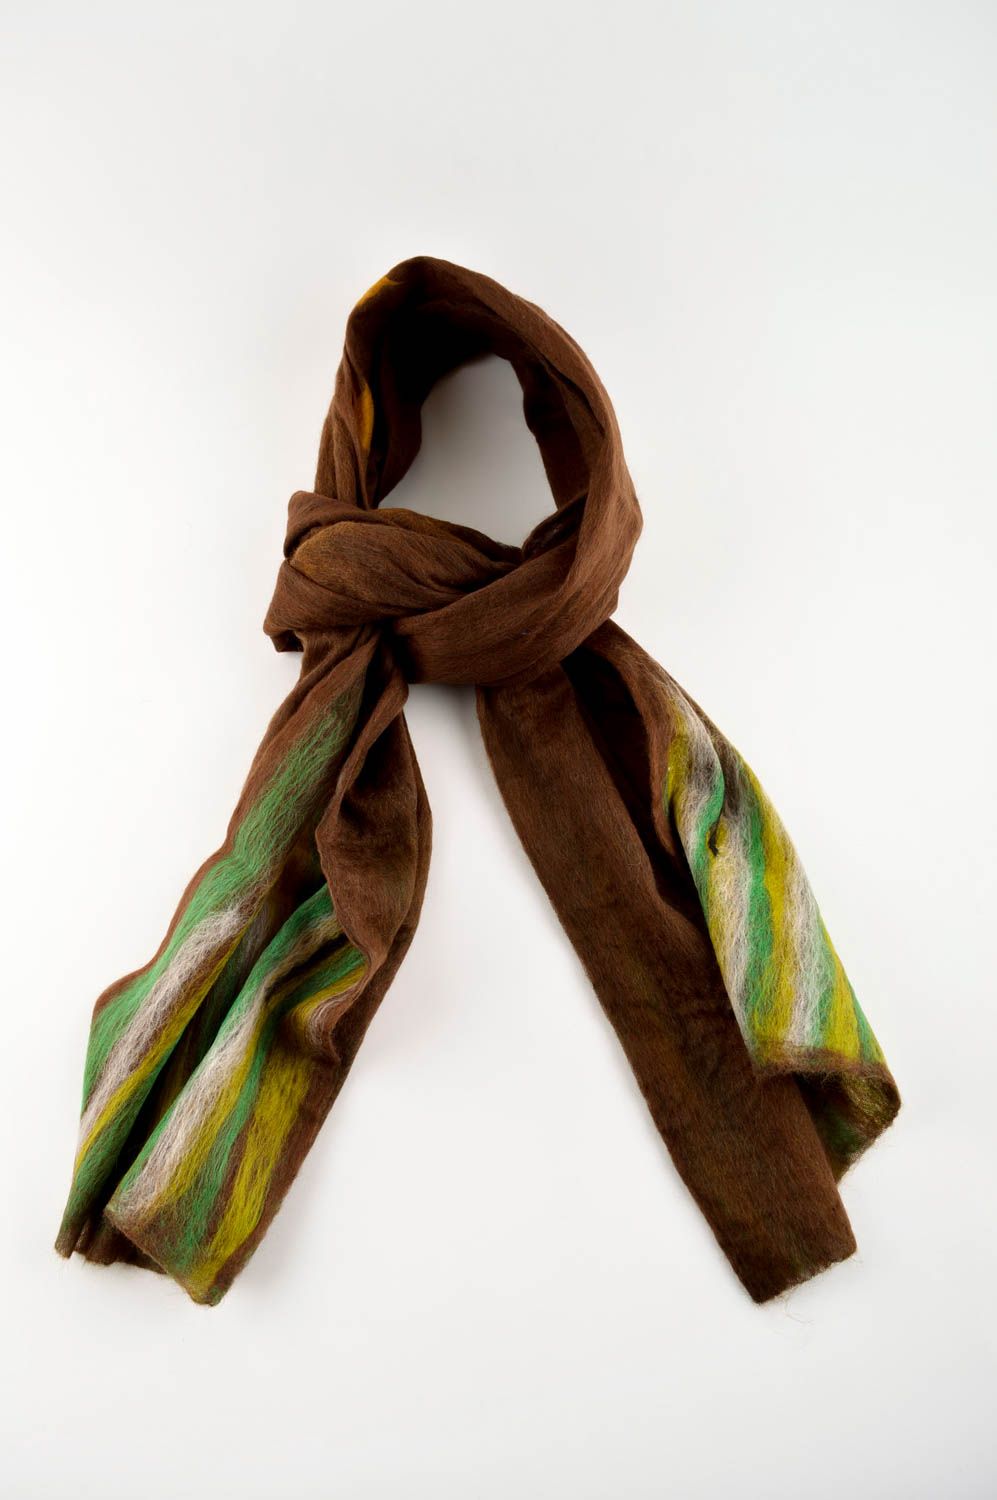 Handmadet gefilzter Schal Frauen Accessoire brauner Schal warmer Schal gestreift foto 4